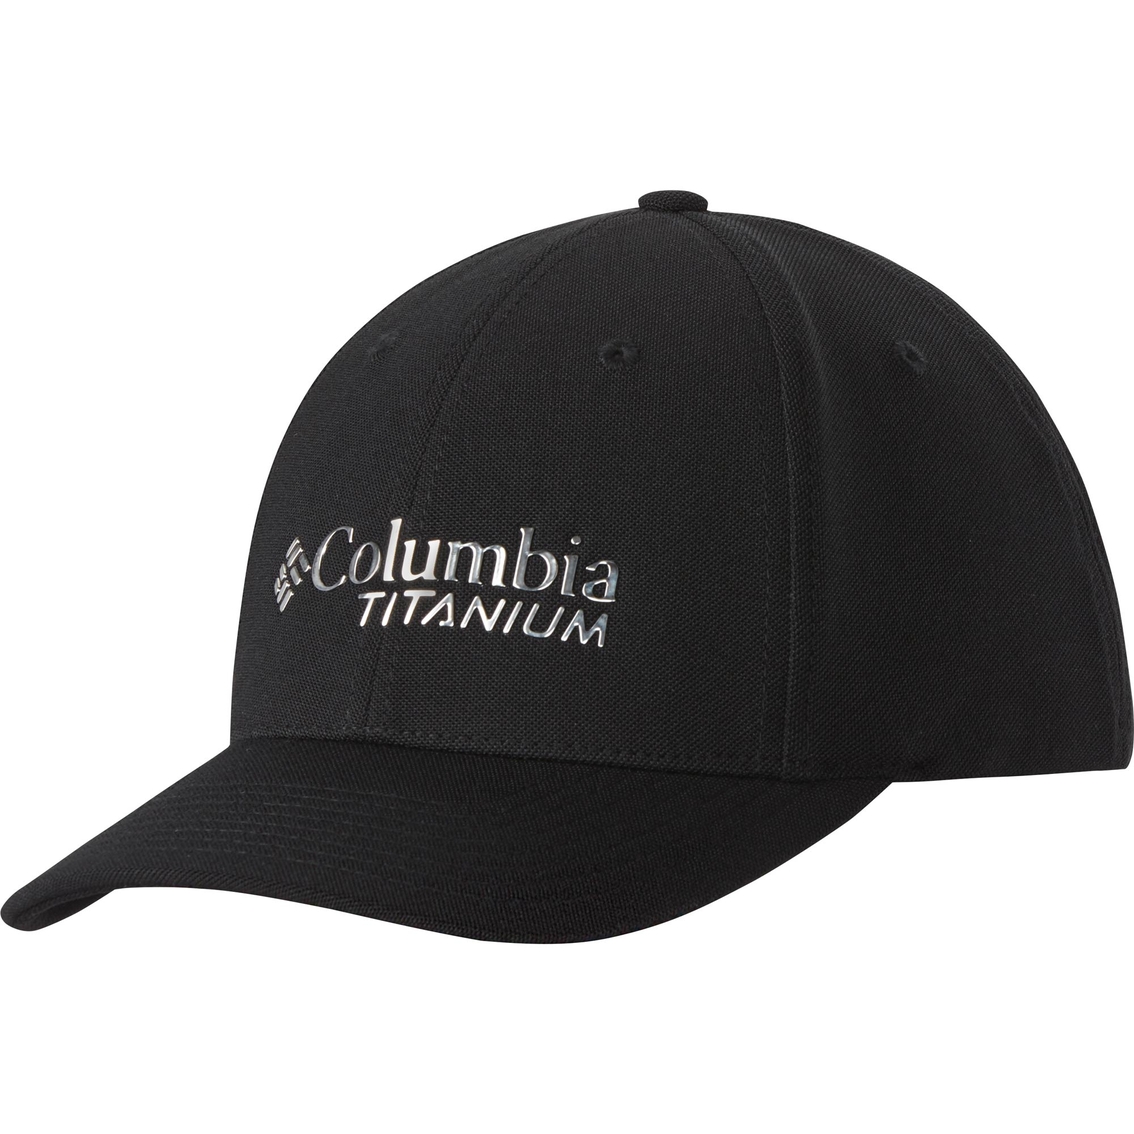 COLUMBIA MEN TITANIUM BALL CAP BLACK